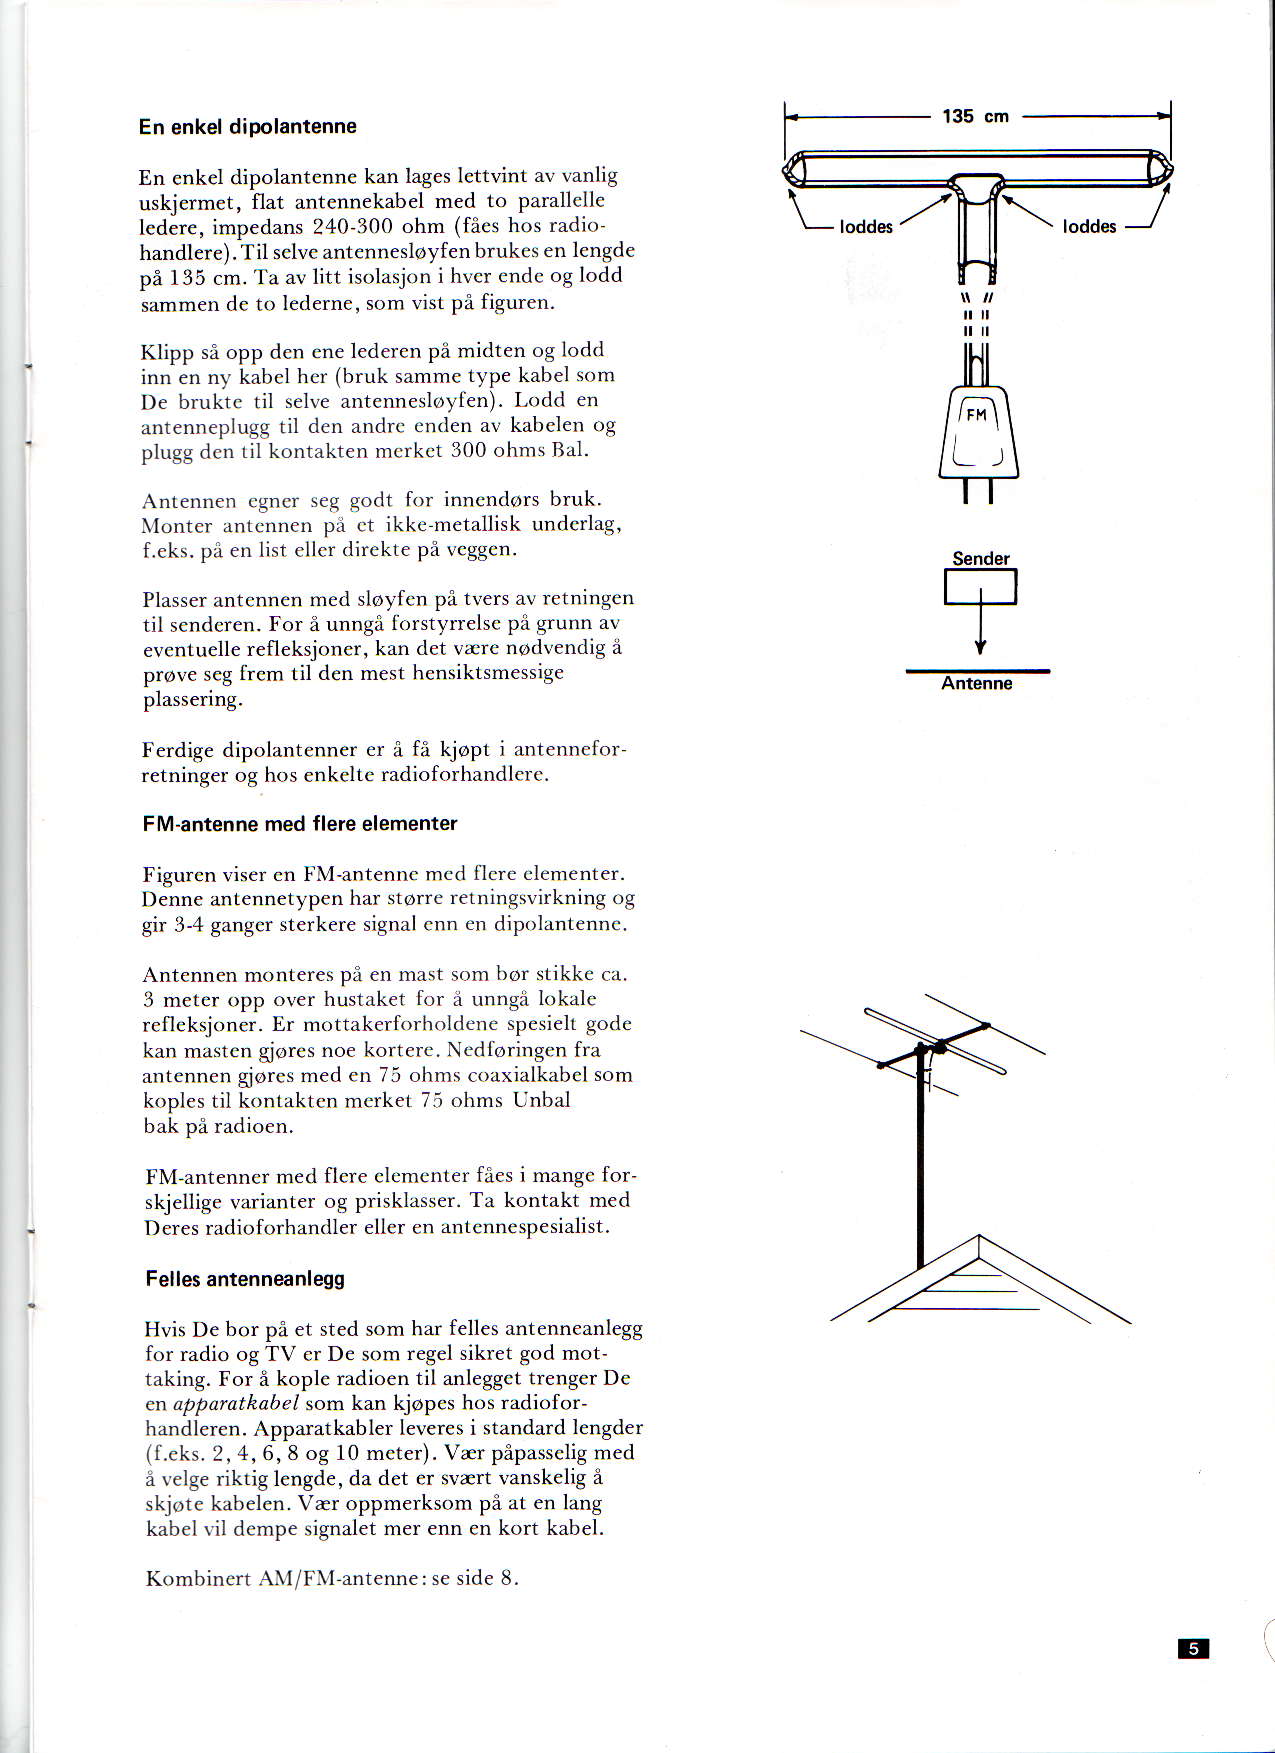 En enkel dipolantenne En enkel dipolantennc kan lages lettvint av vanlig uskiermet, flat antennekabel med to parallcllc ledere, impedans 2,t0-300 ohm (fnes hos radio handlere).